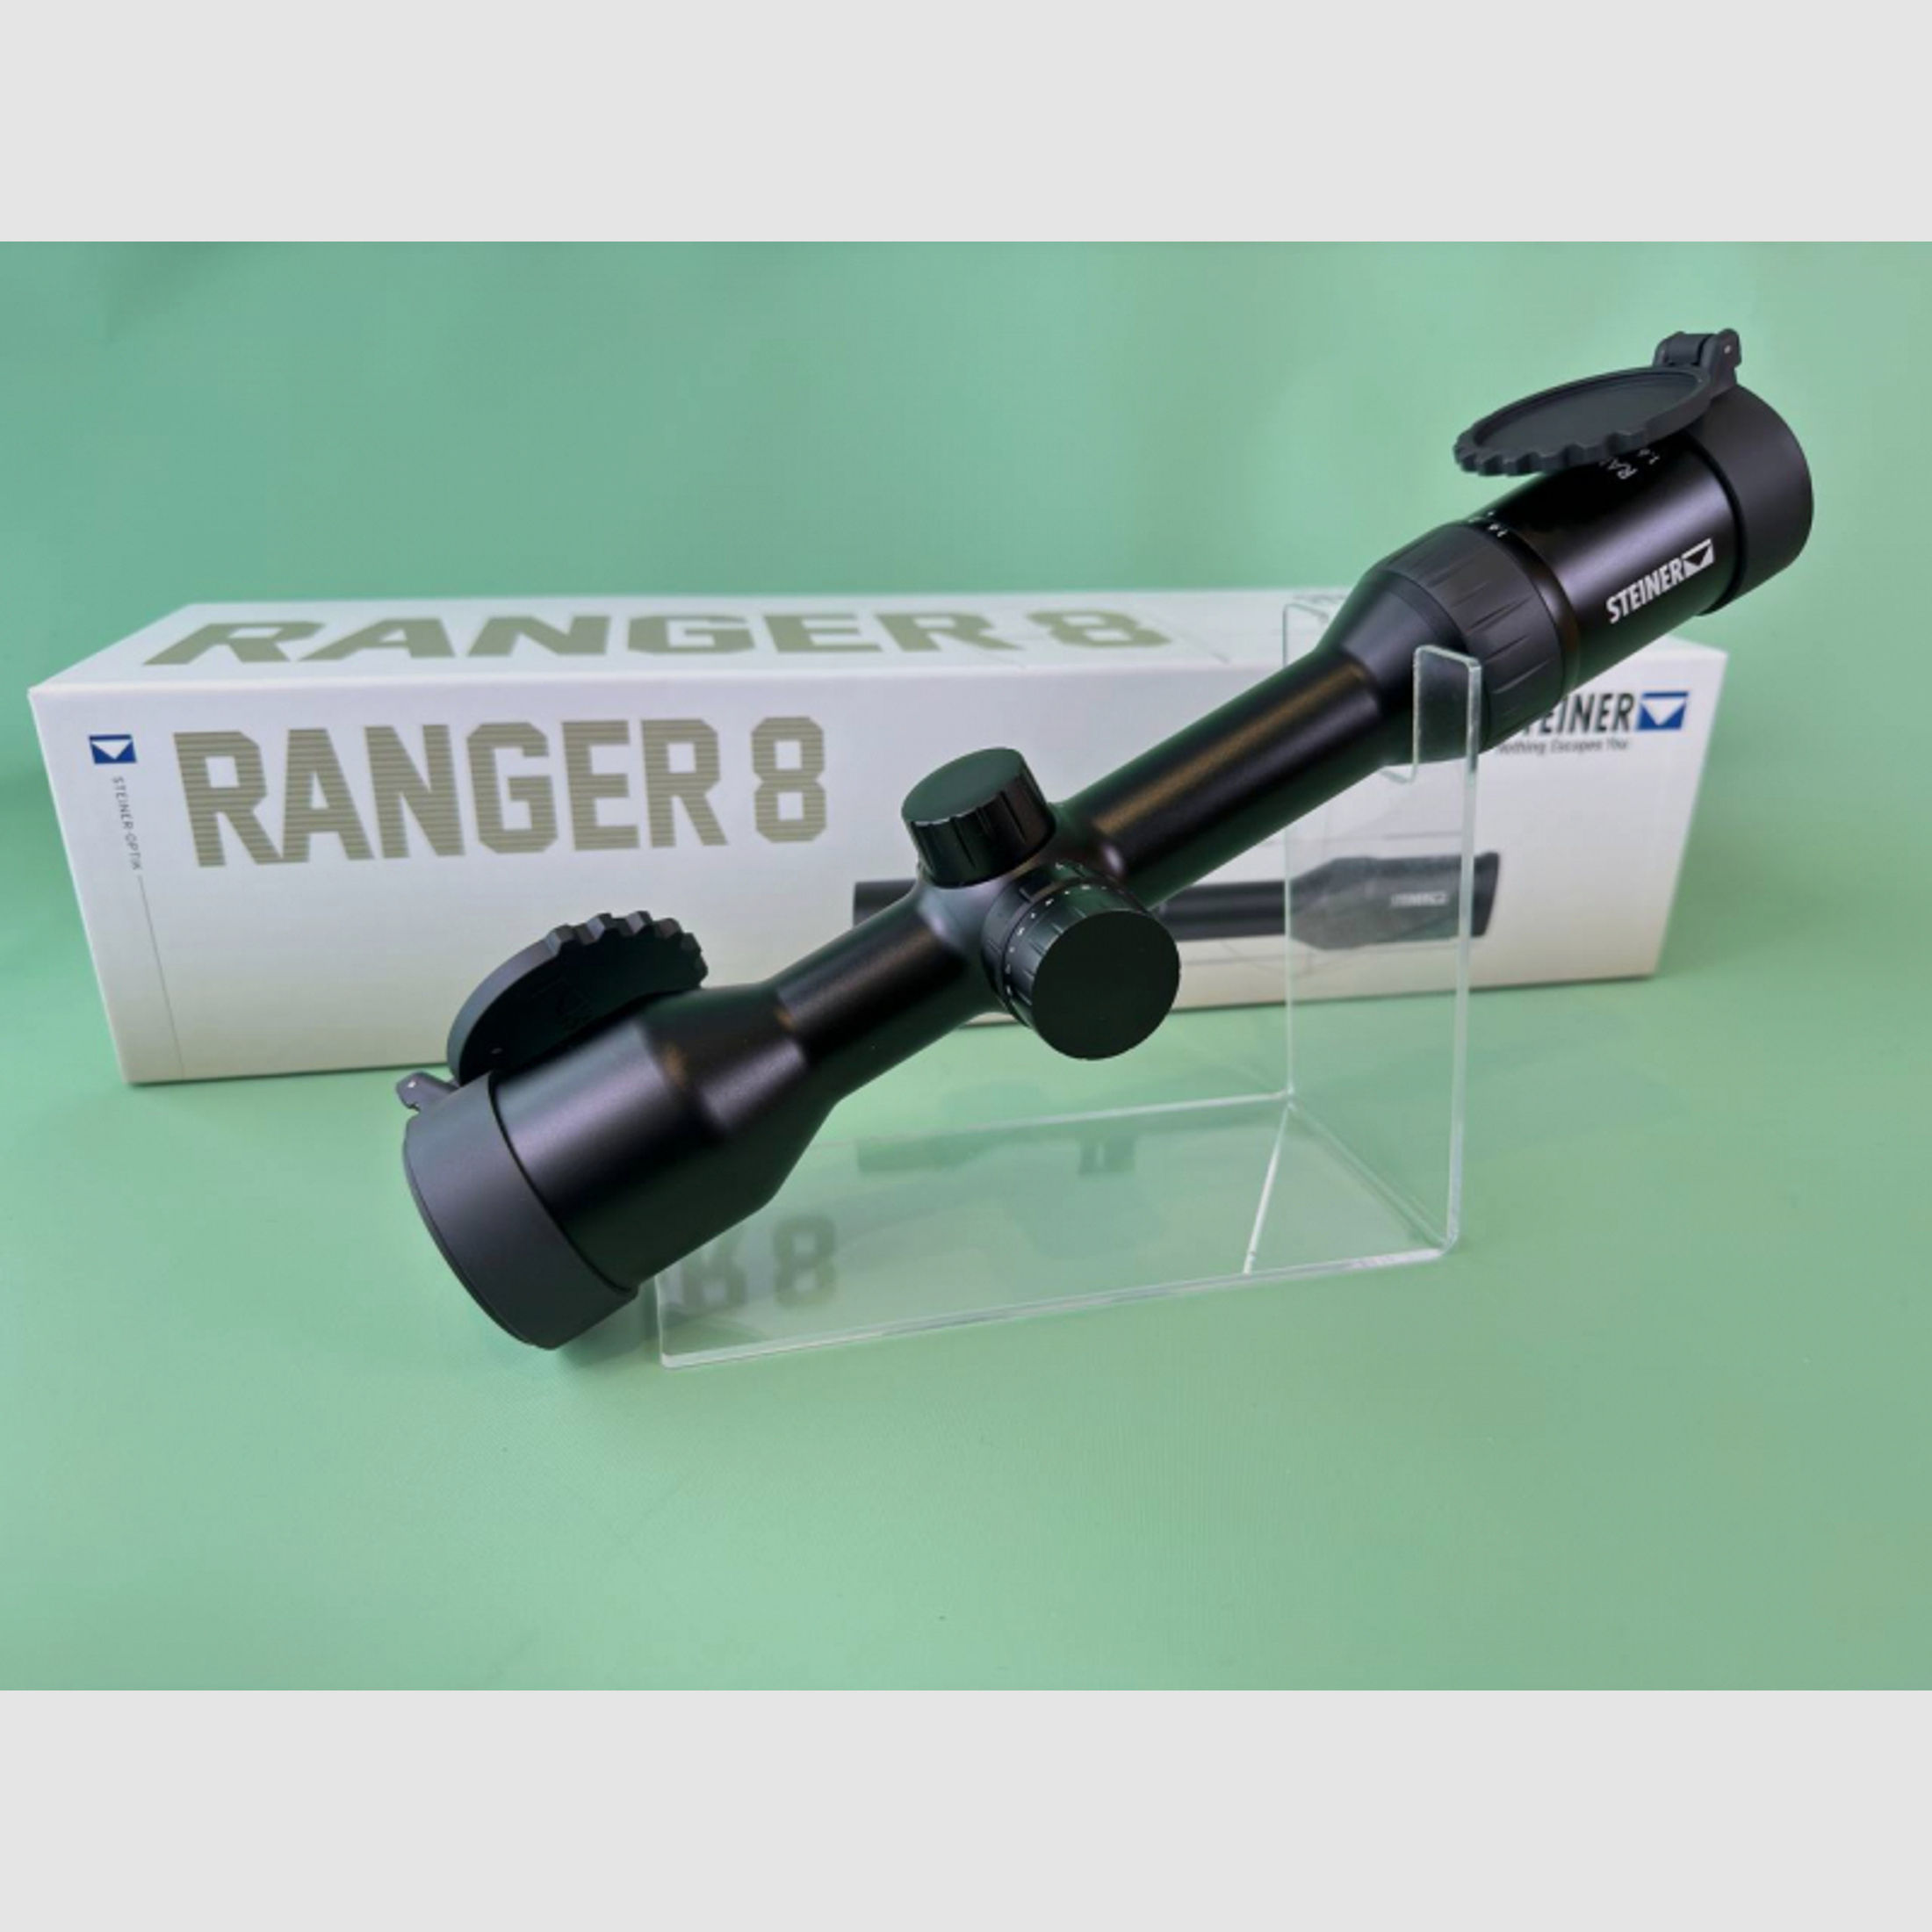 Steiner Ranger 8 Zielfernrohr Zielfernrohr 1,6-12,8x42 *Waffenhandel Ahnert* *Neu* *super kompakt*